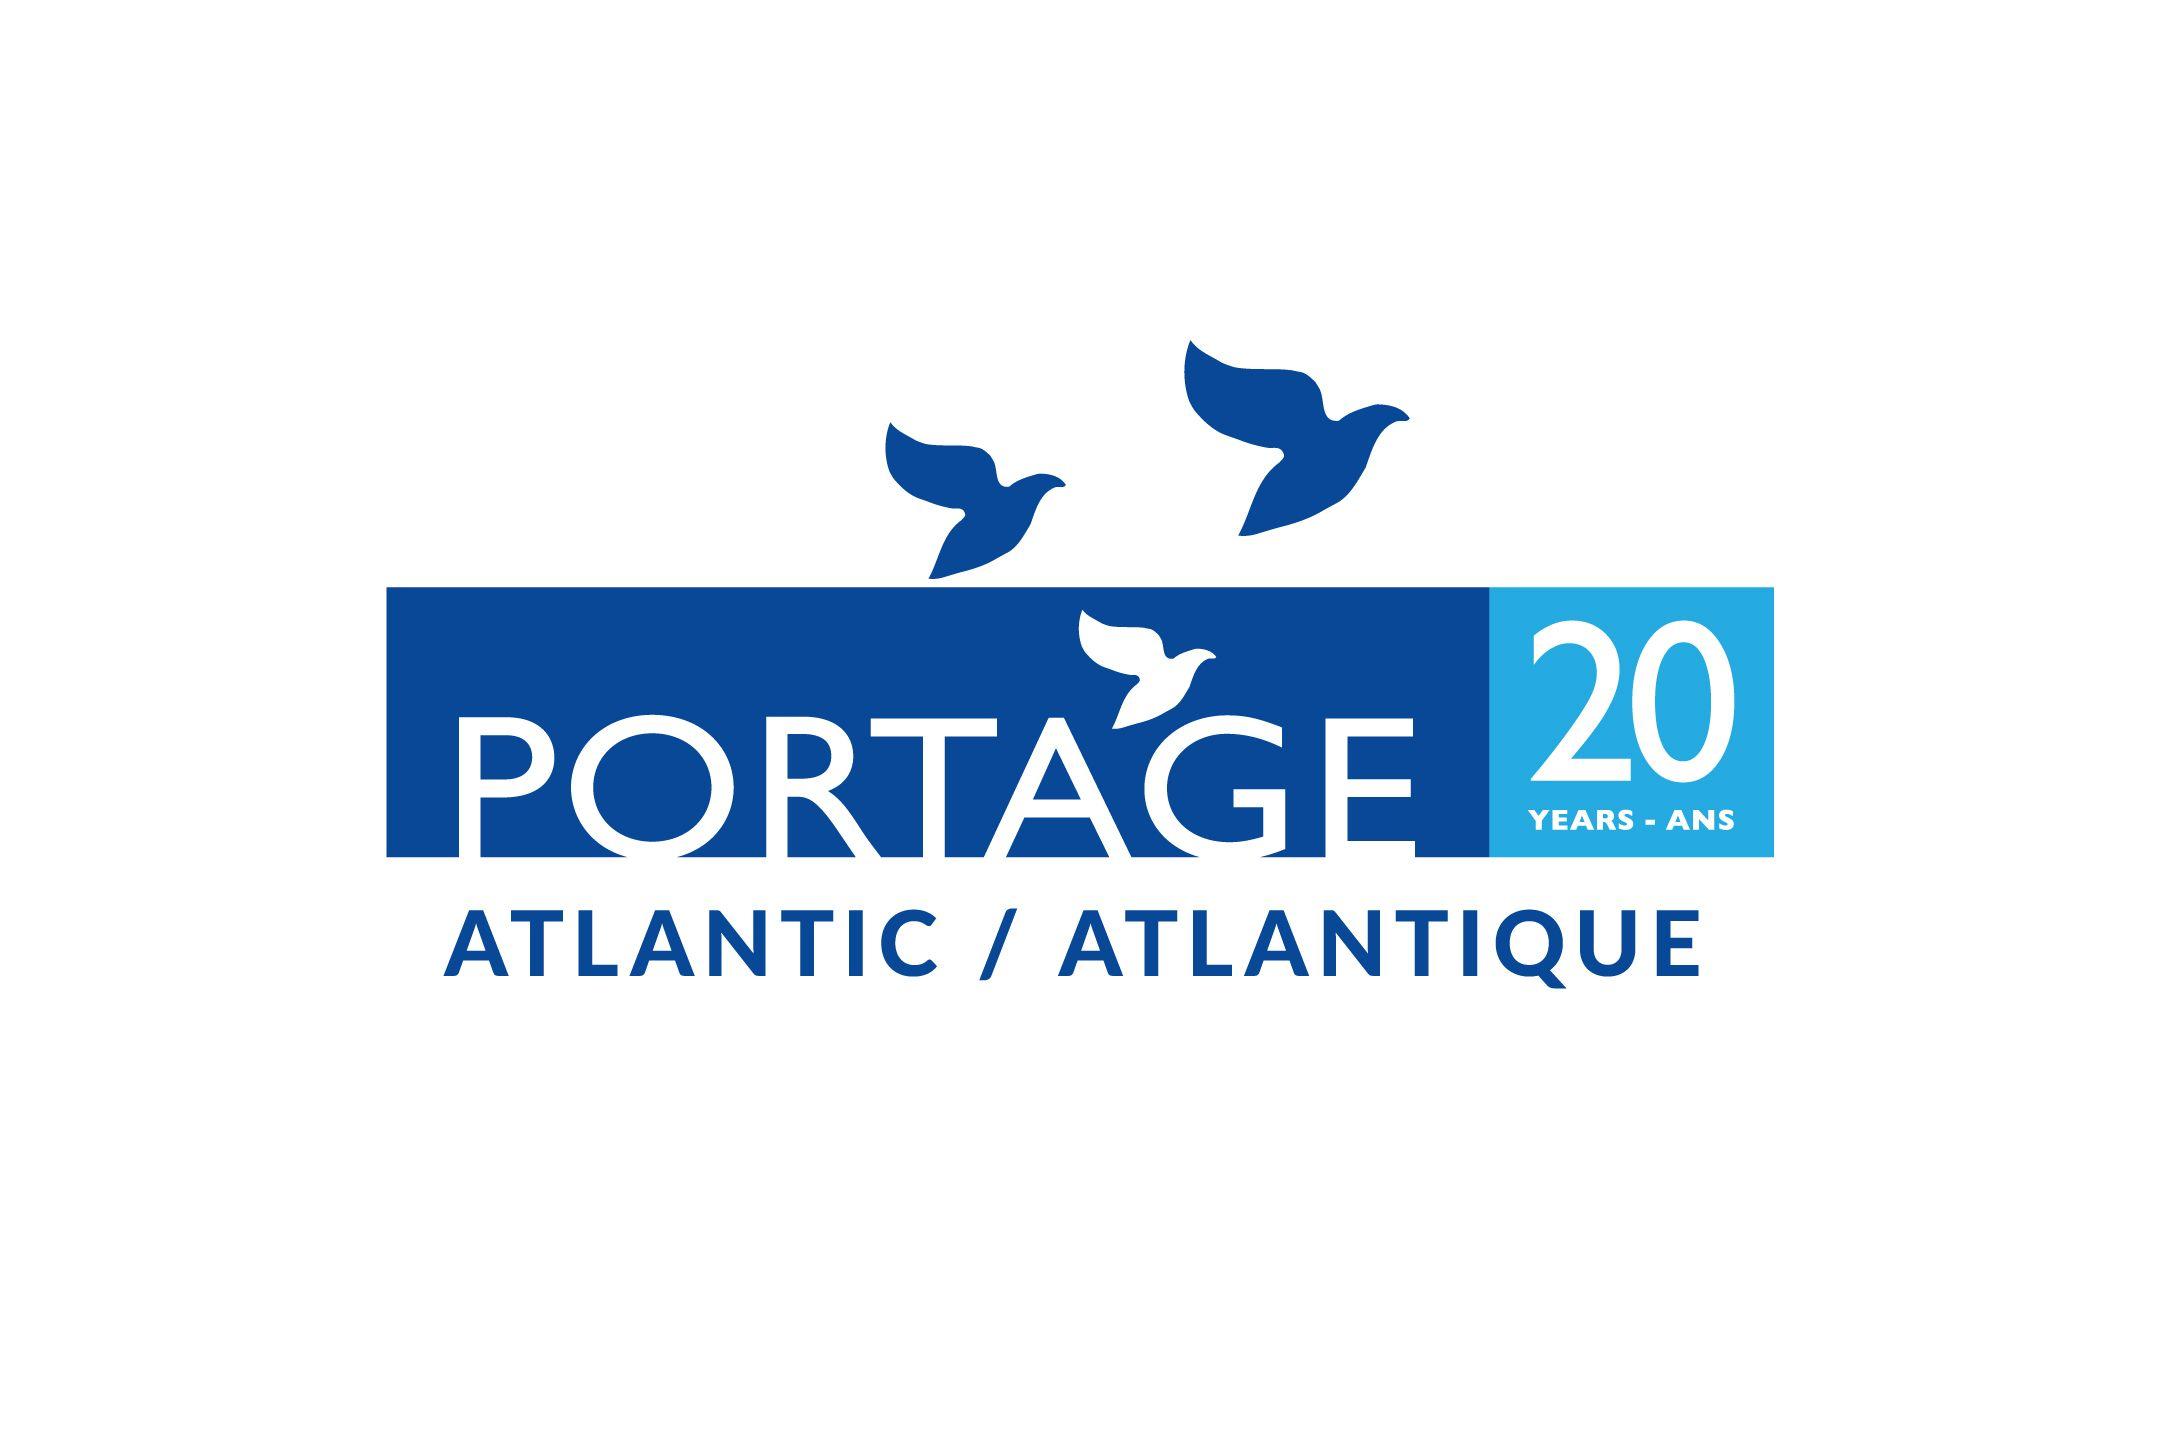 Portage Logo - Portage Atlantic 20 years - Portage